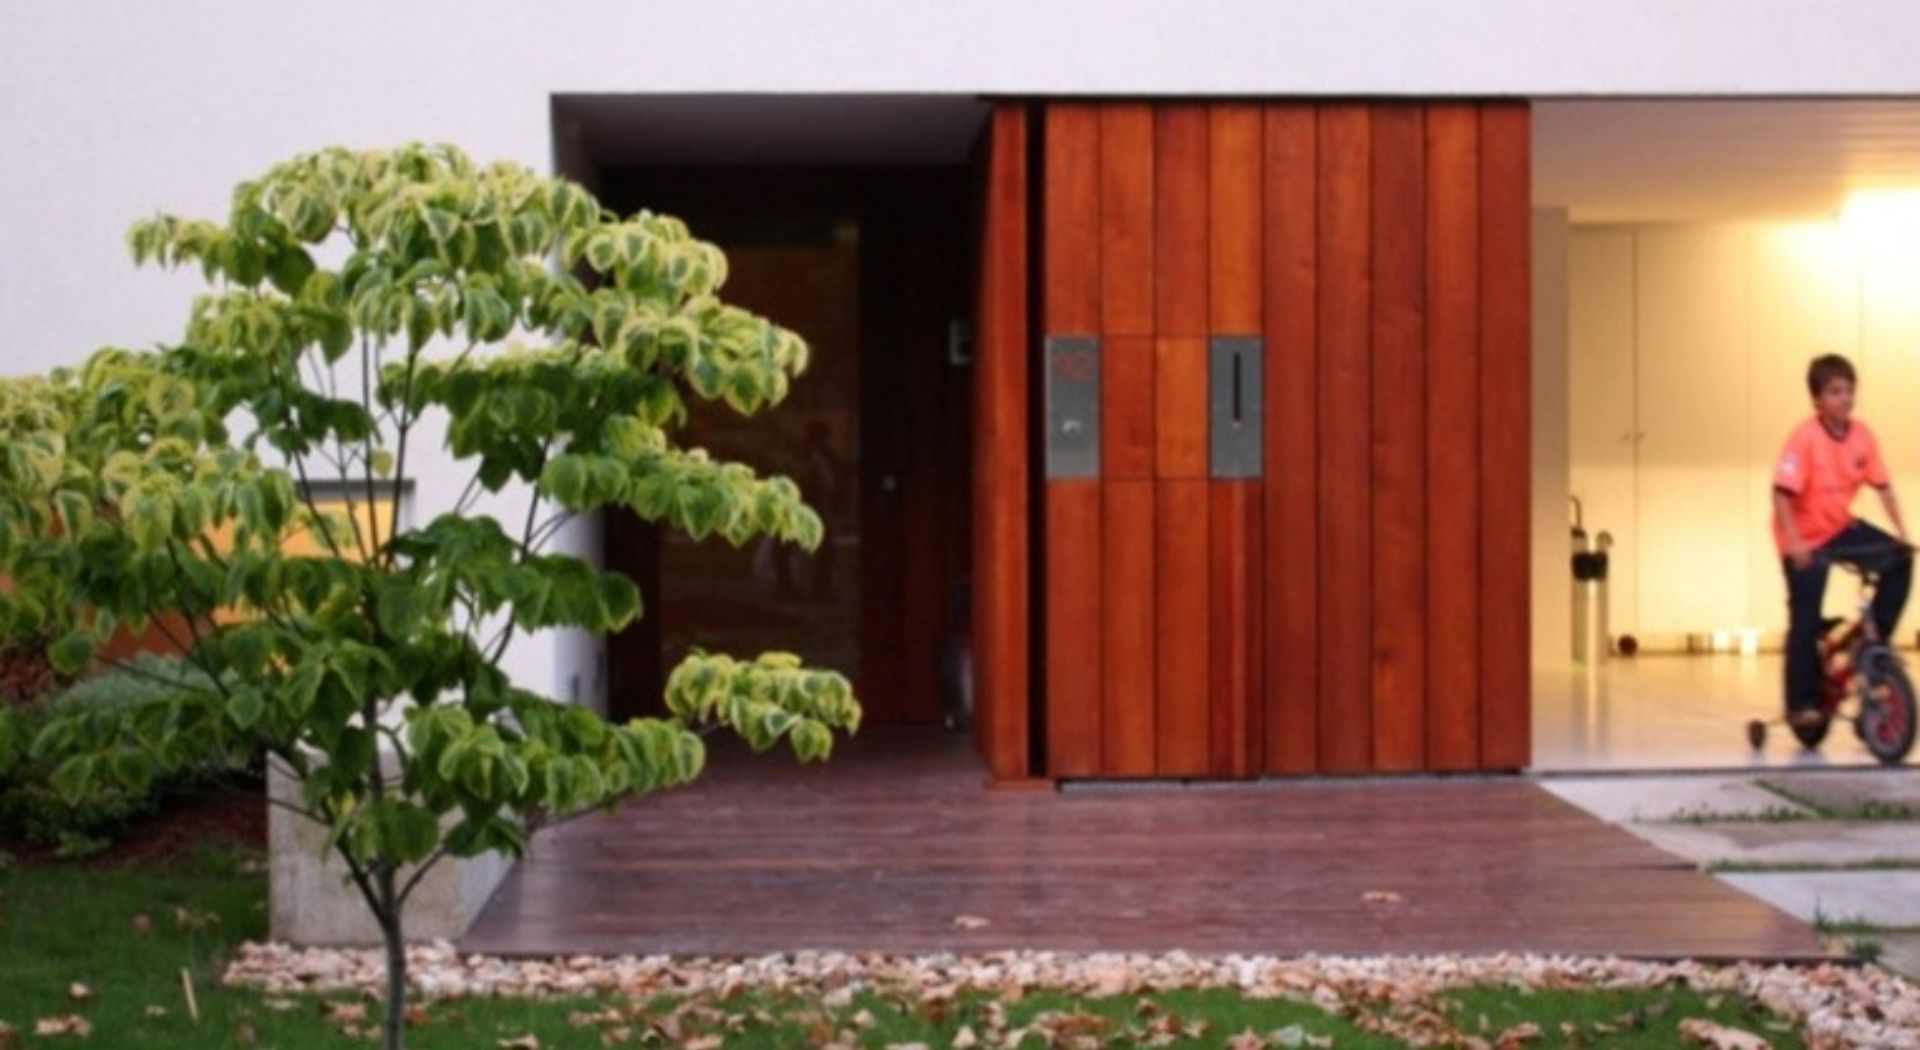 Arquitecto Villagarcía de Arousa vista entrada garaje, portal abierto